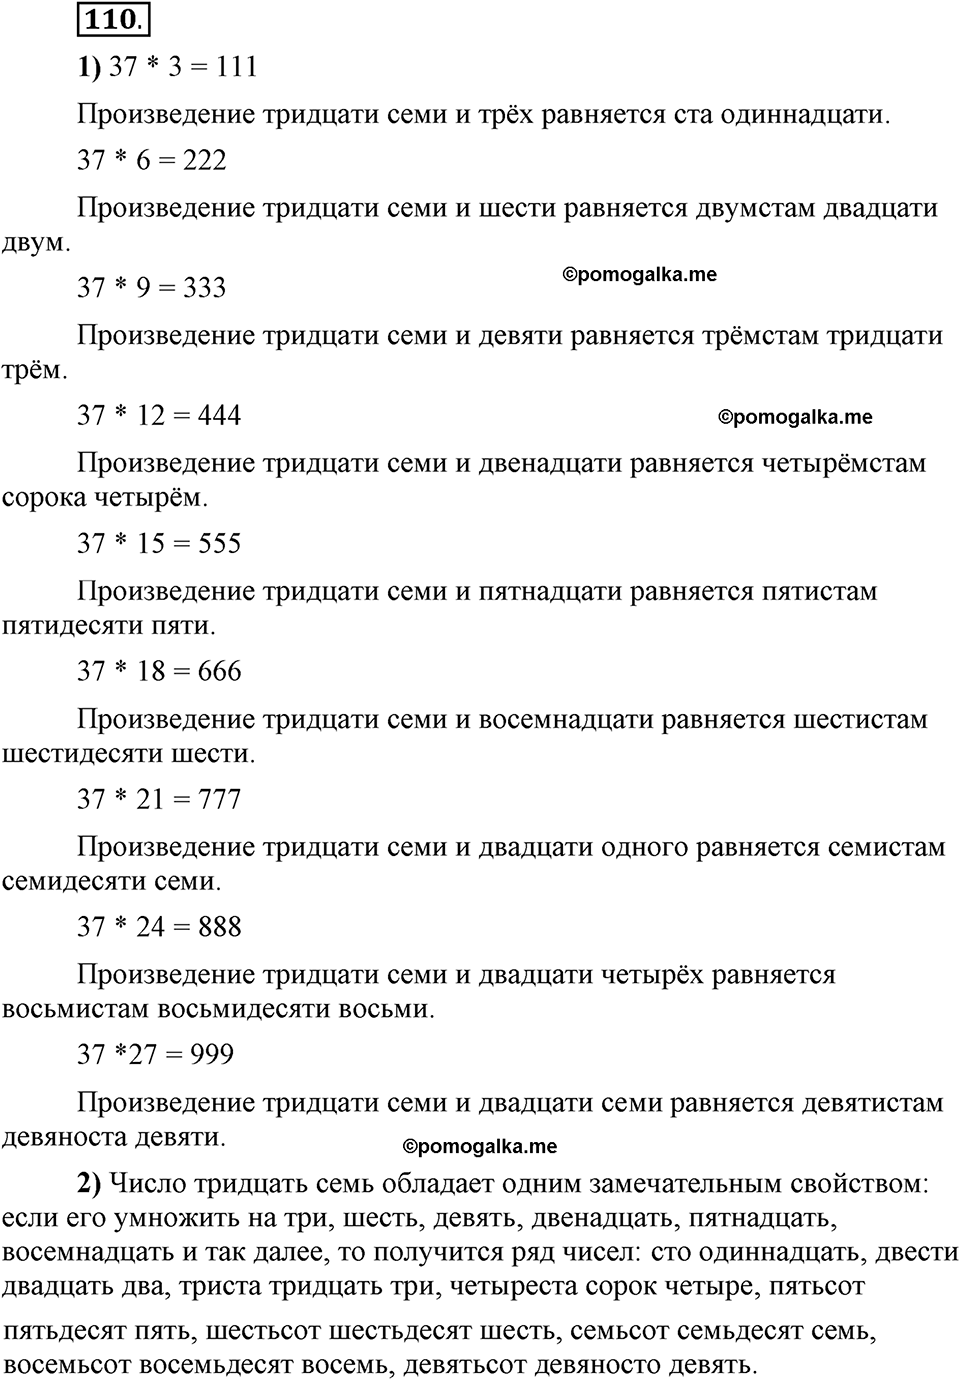 Глава 7. Упражнение №110 русский язык 6 класс Шмелёв